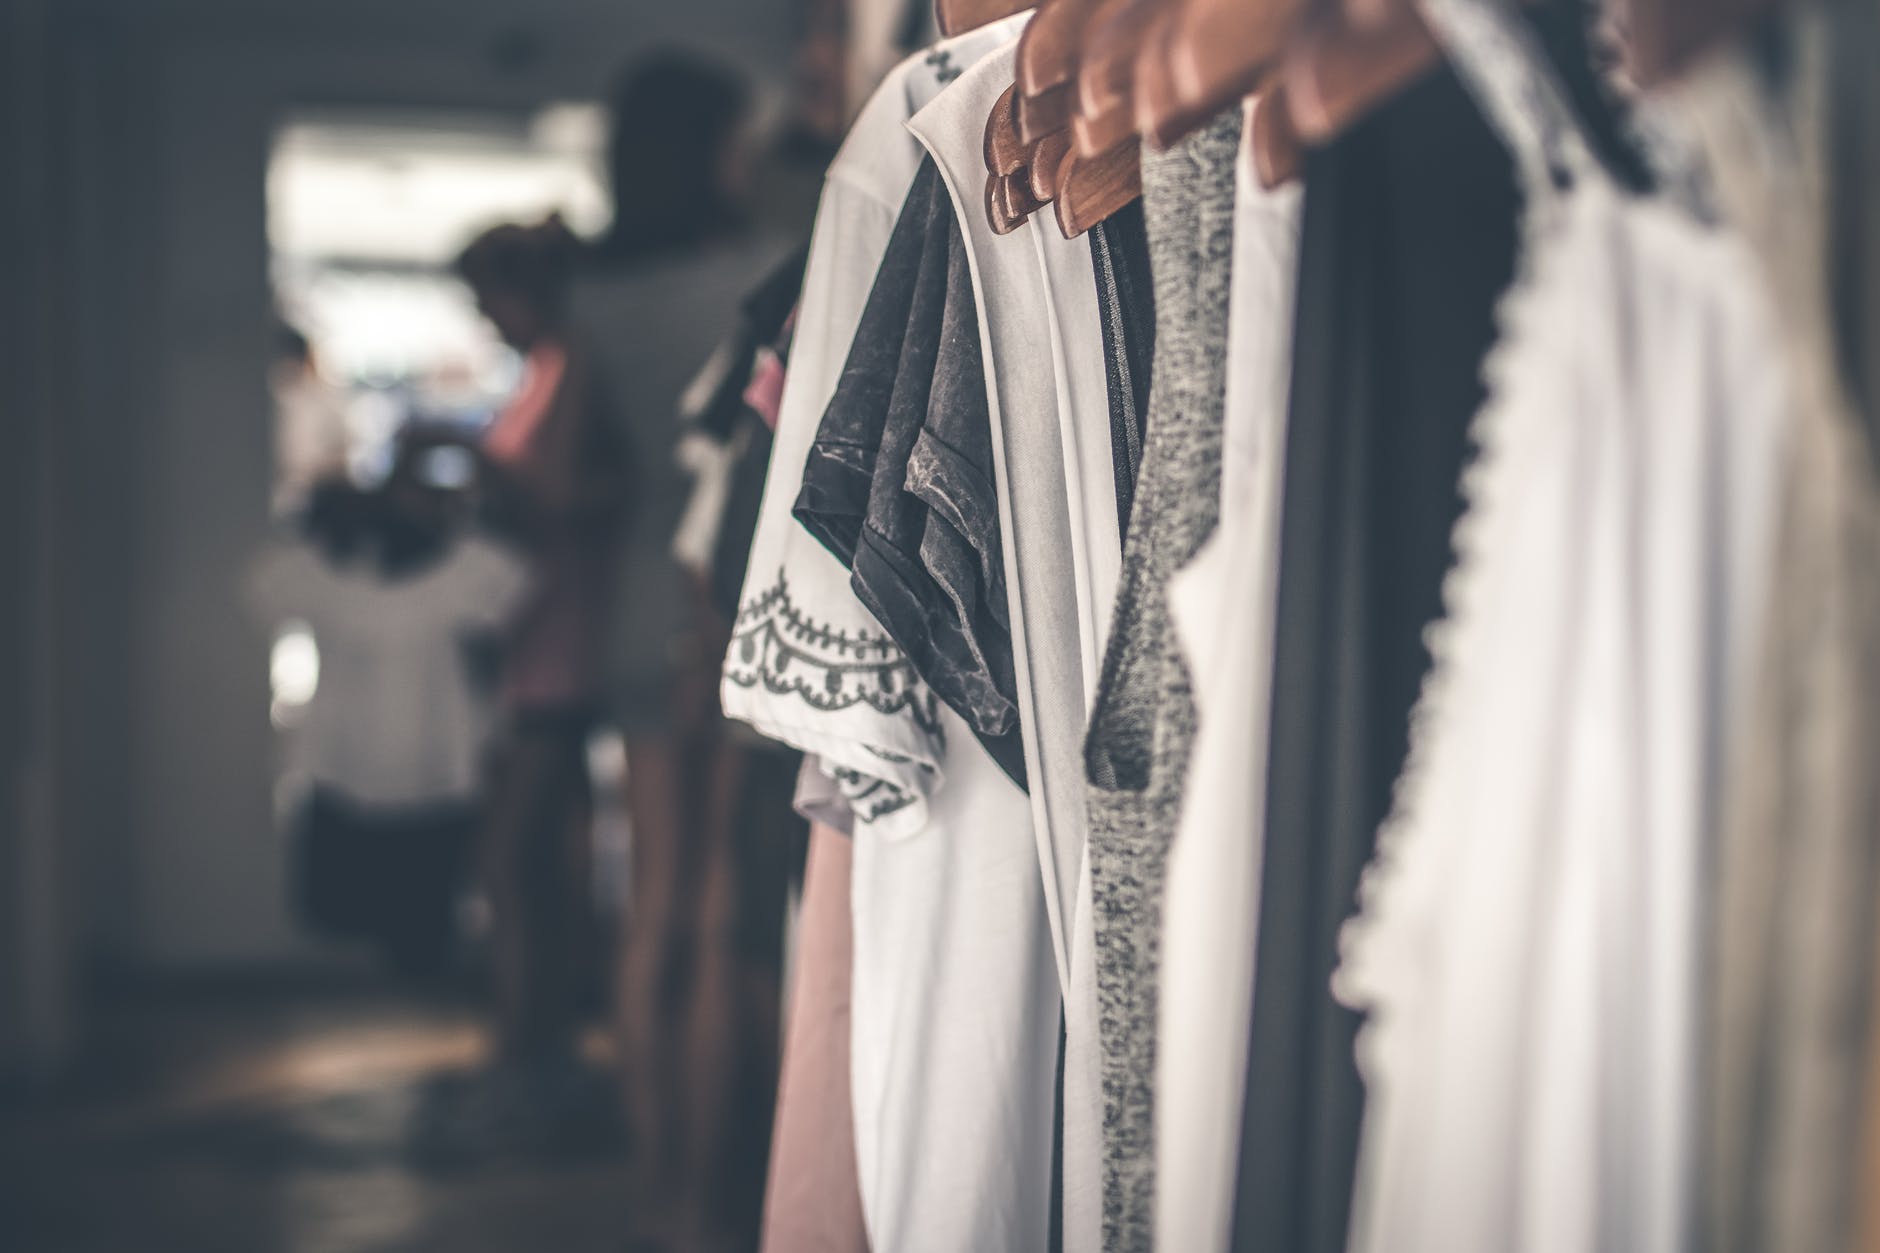 Projekt Kleiderschrank: In 6 Schritten zu mehr Ordnung und Übersicht